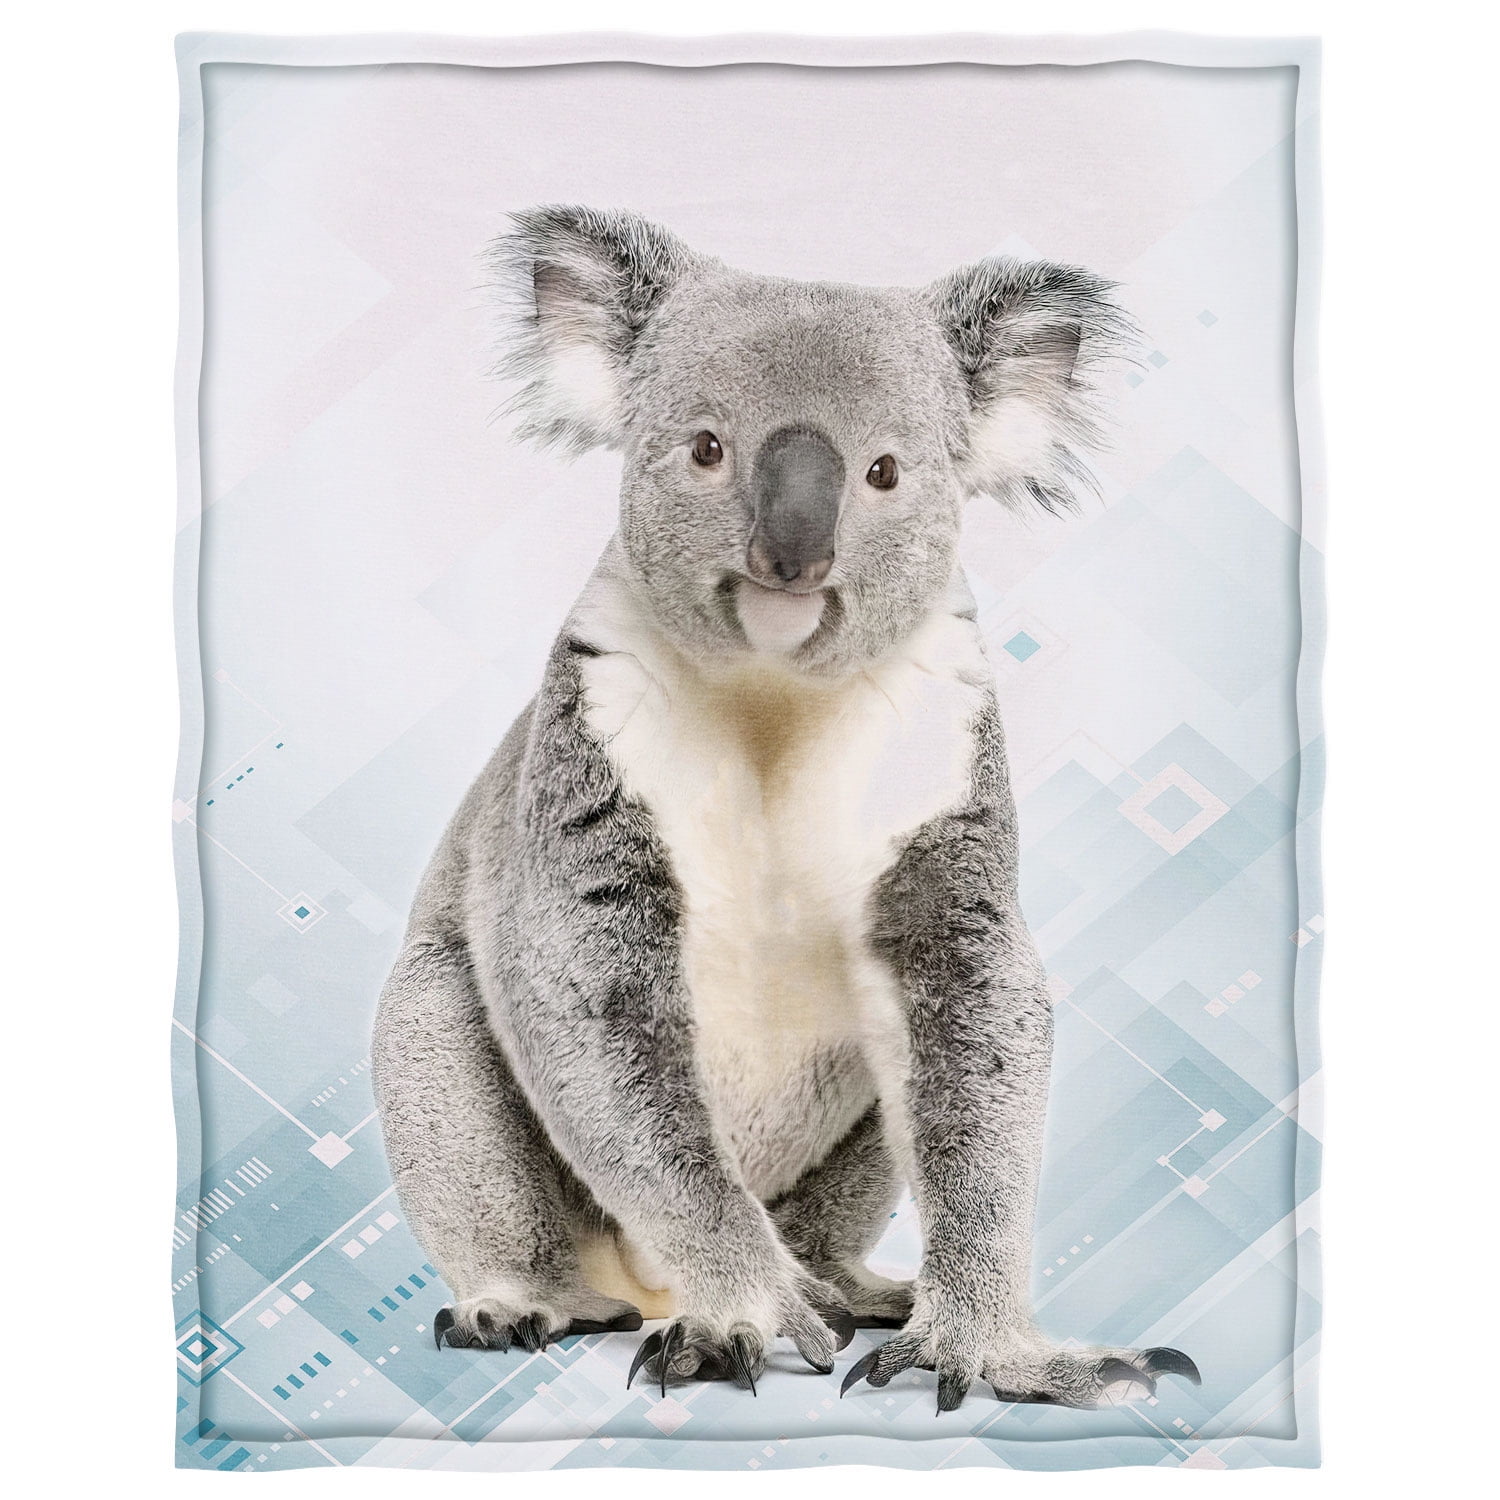 Koala Blanket